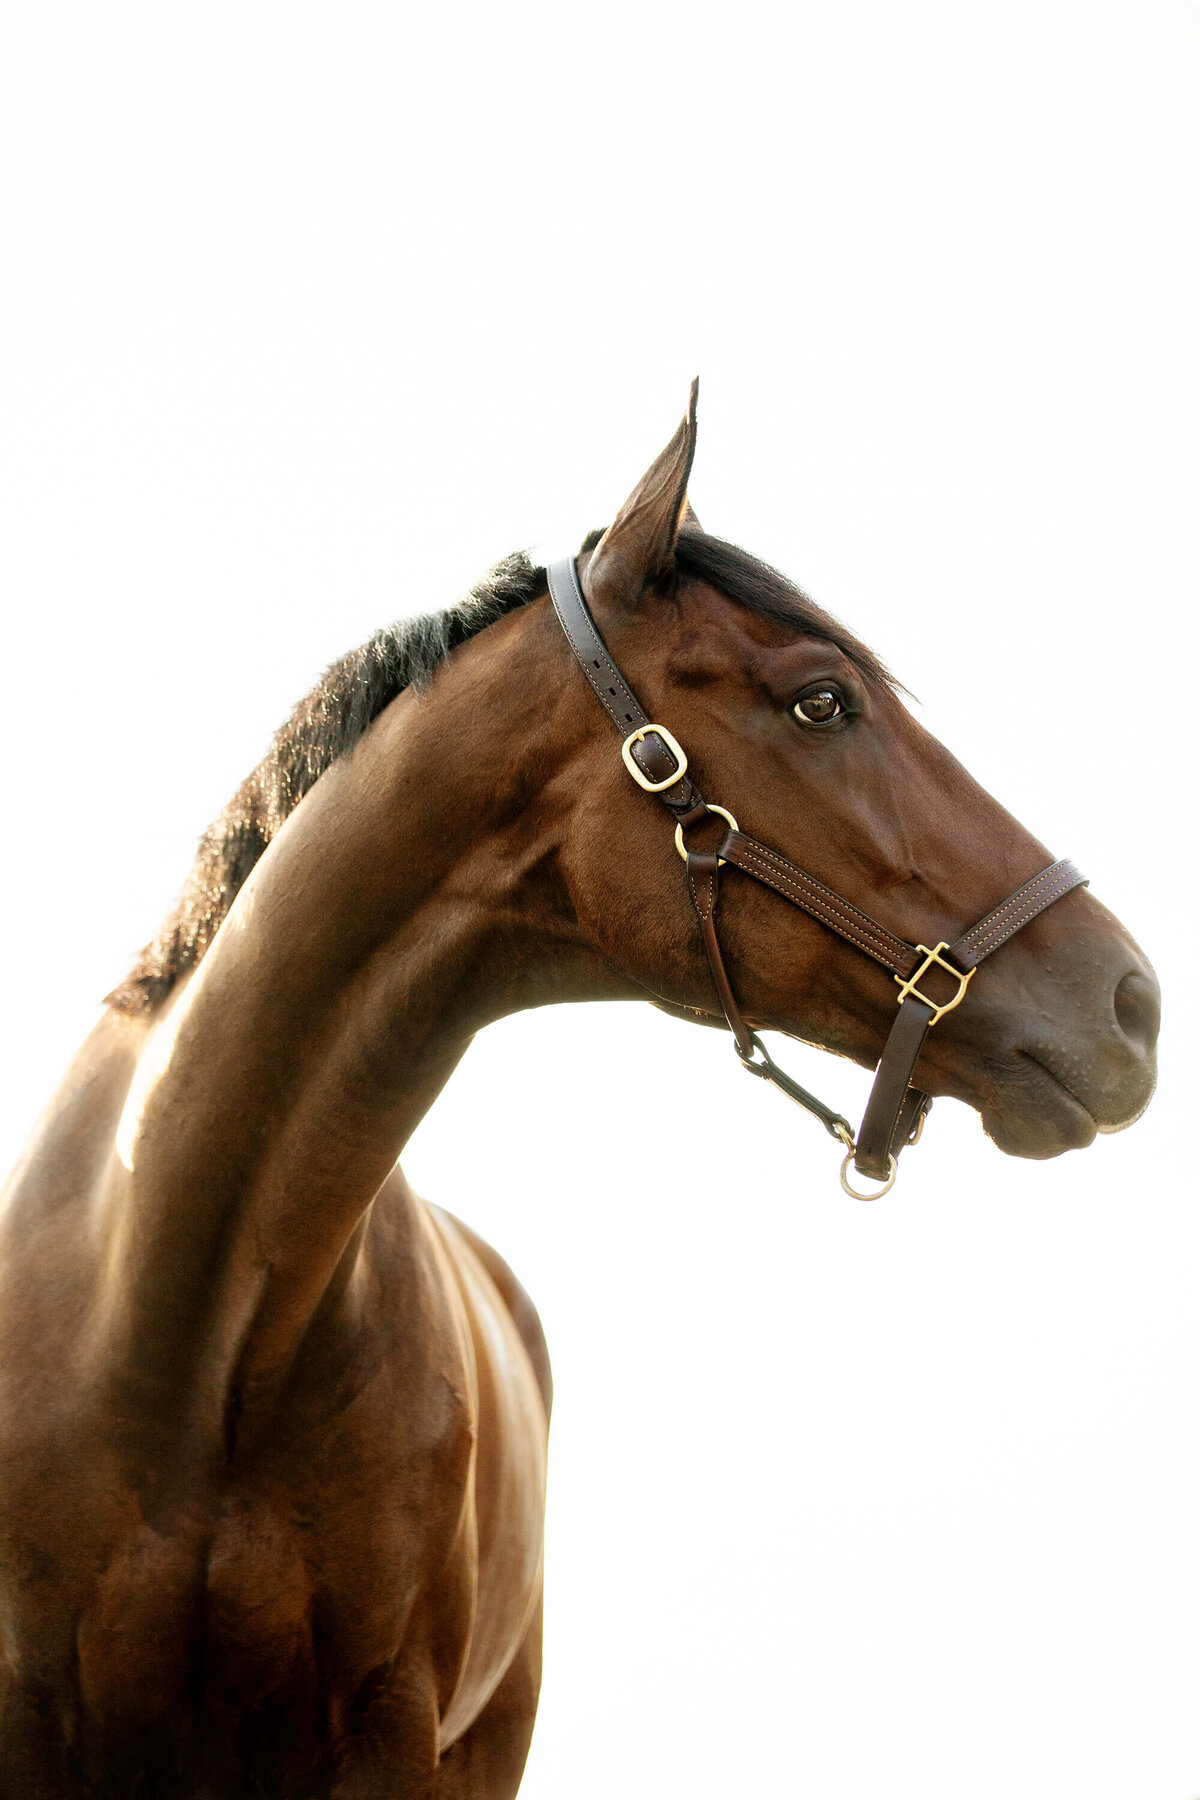 thoroughbred-horse-photo-saratoga-springs-ny